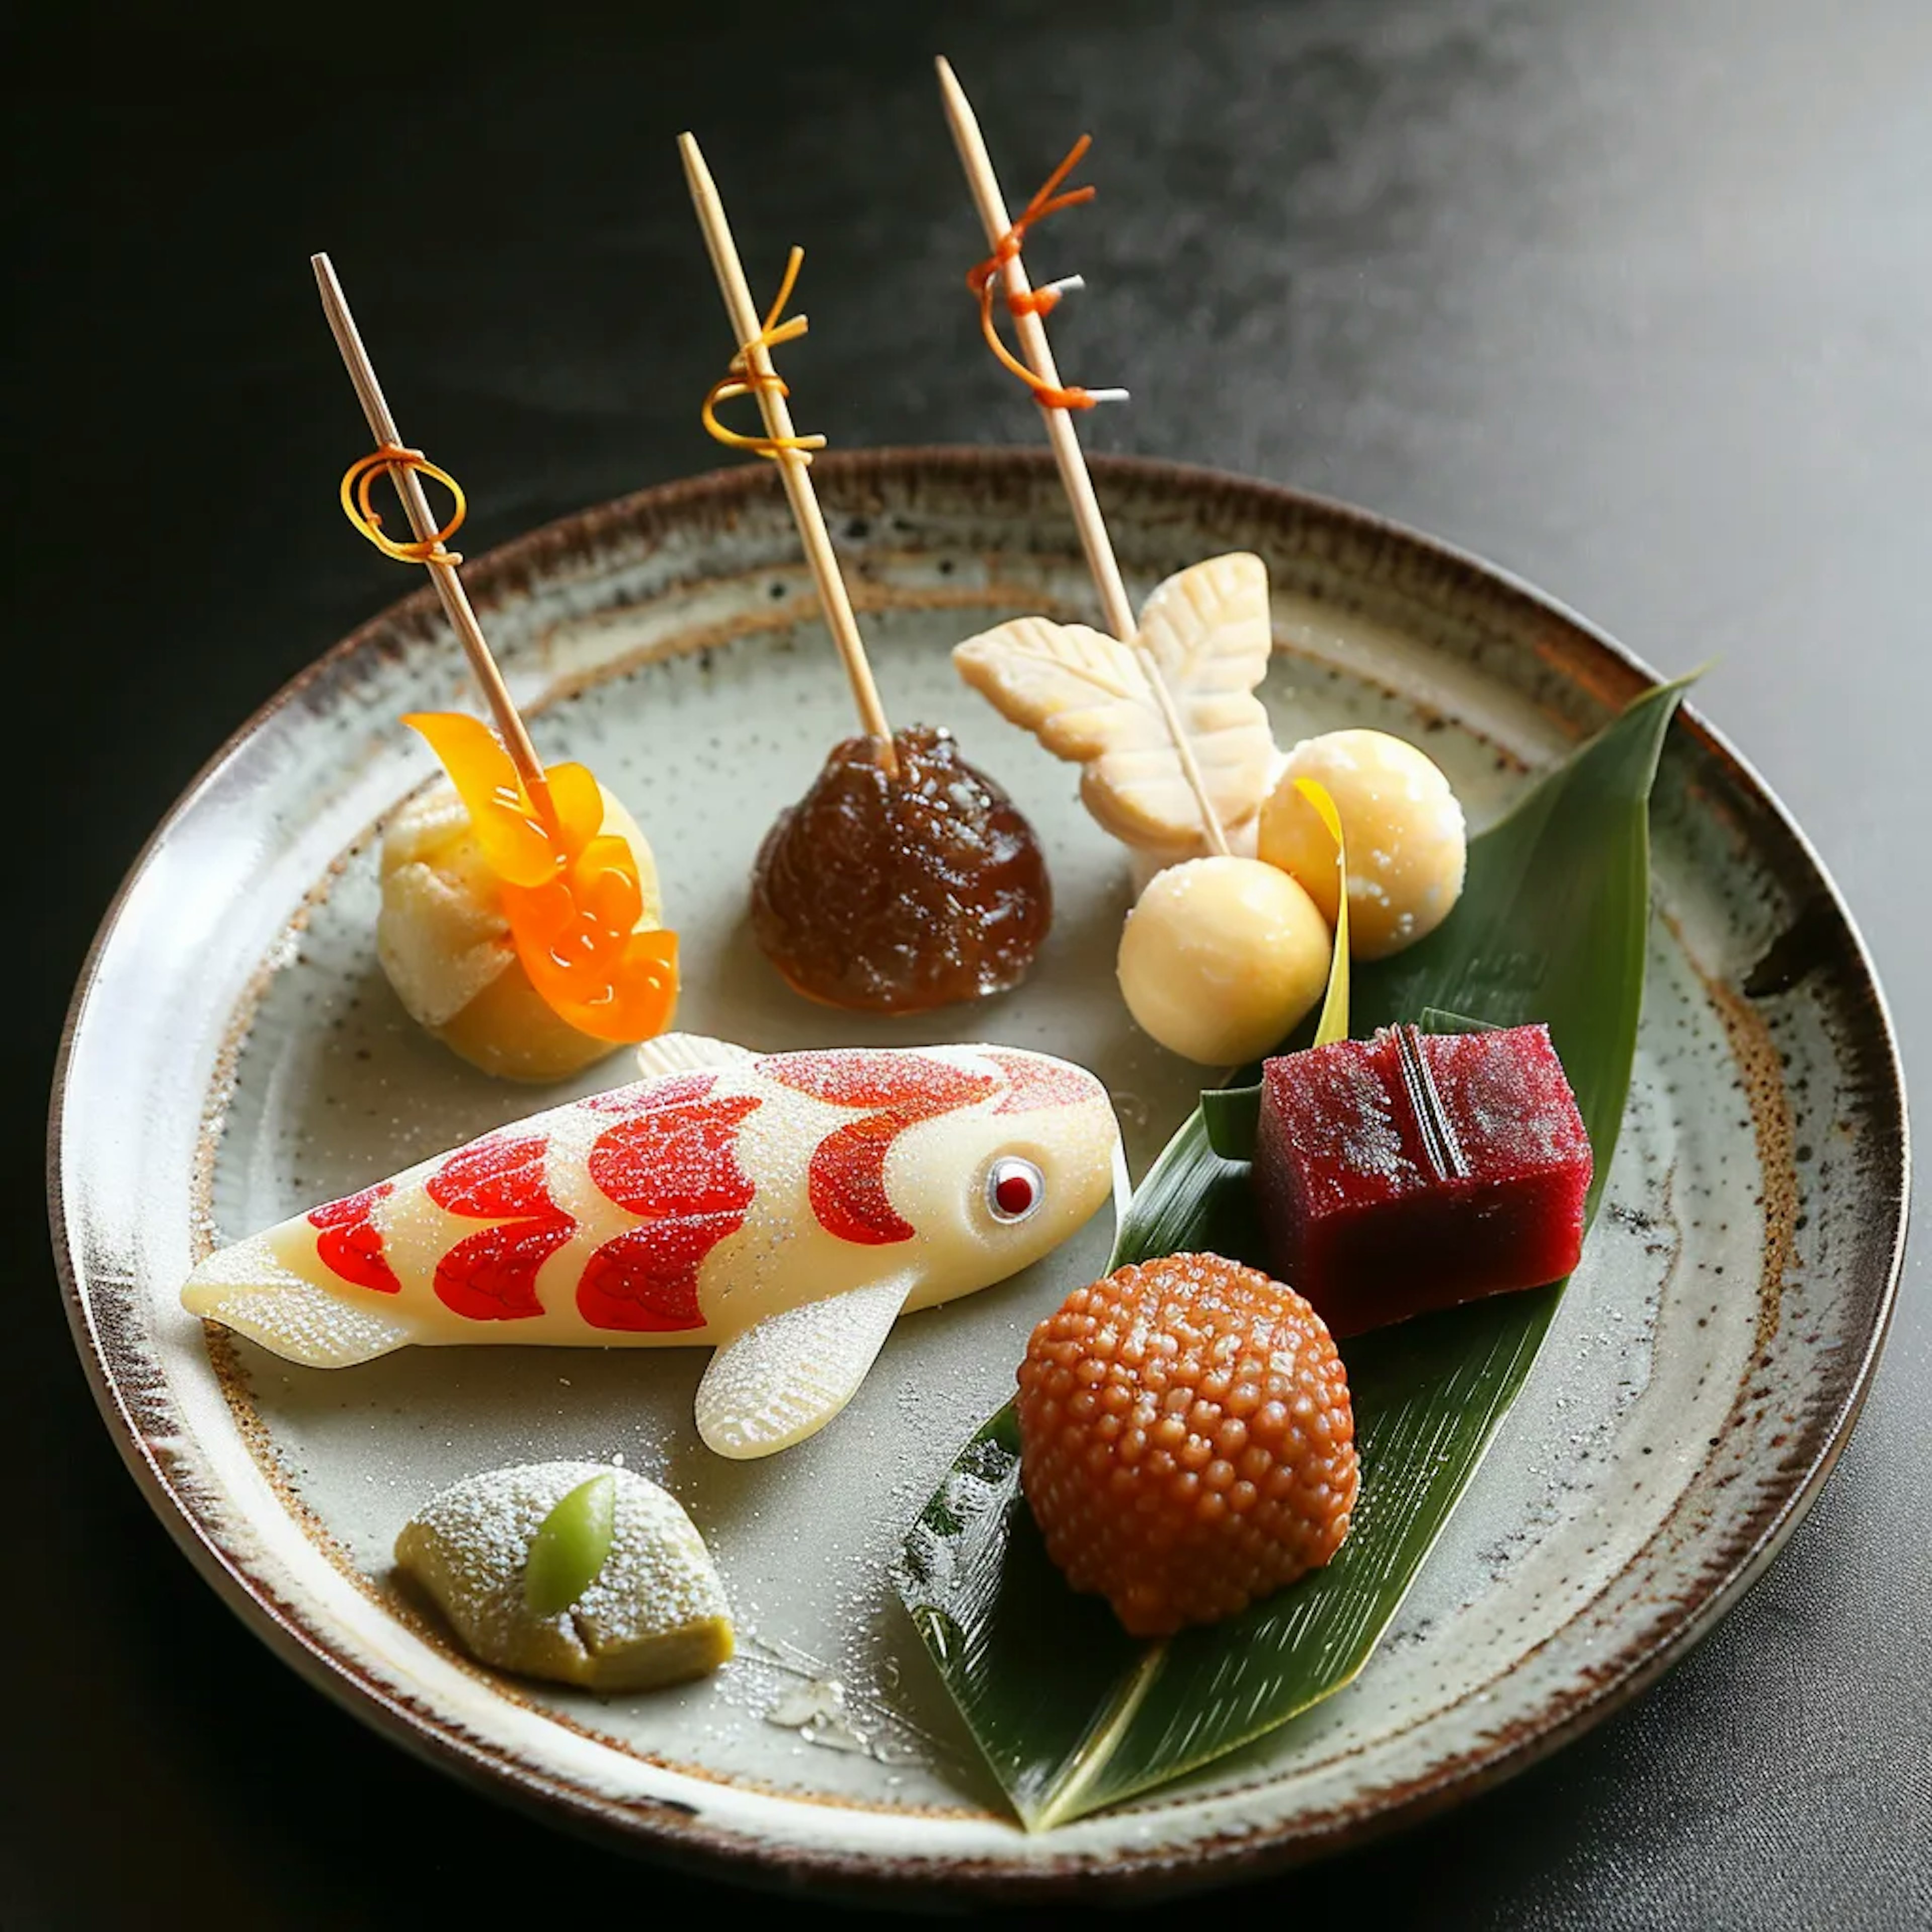 ÉCHIRÉ MARCHÉ AU BEURRE-https://d3nrav7vo3lya8.cloudfront.net/profile_photos/japanese-sweets/42p.webp